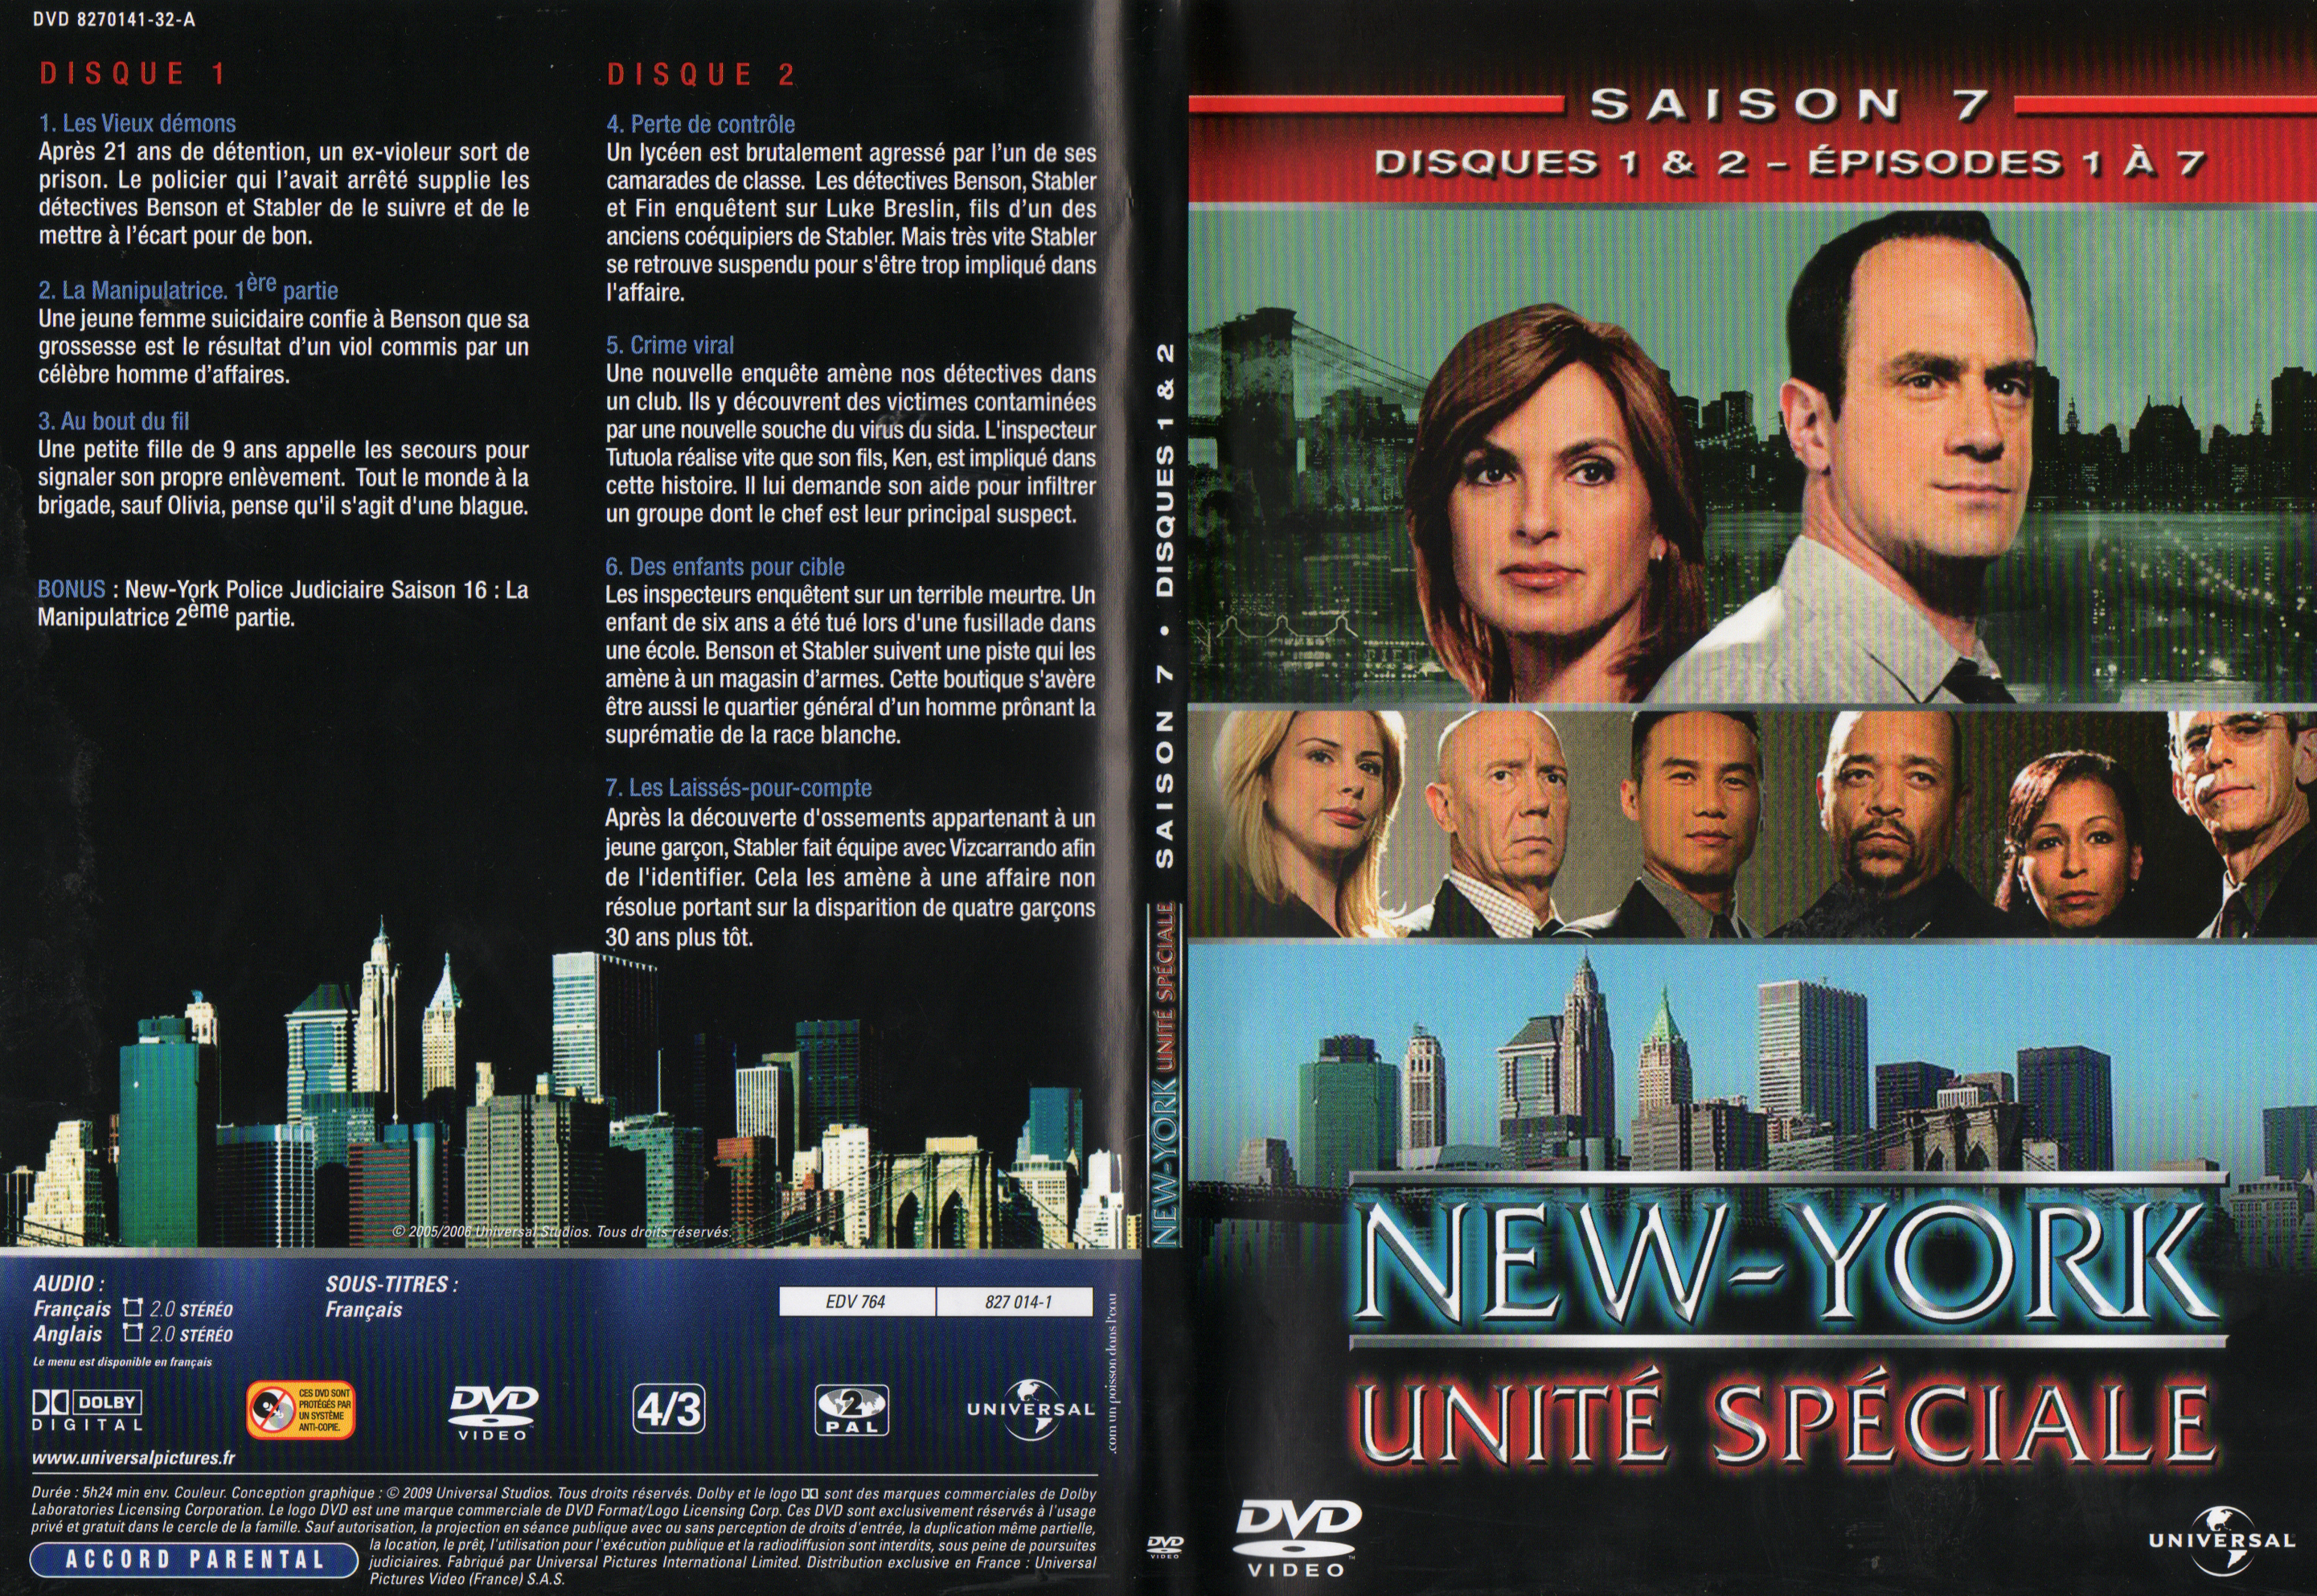 Jaquette DVD New York unit spciale saison 7 DVD 1